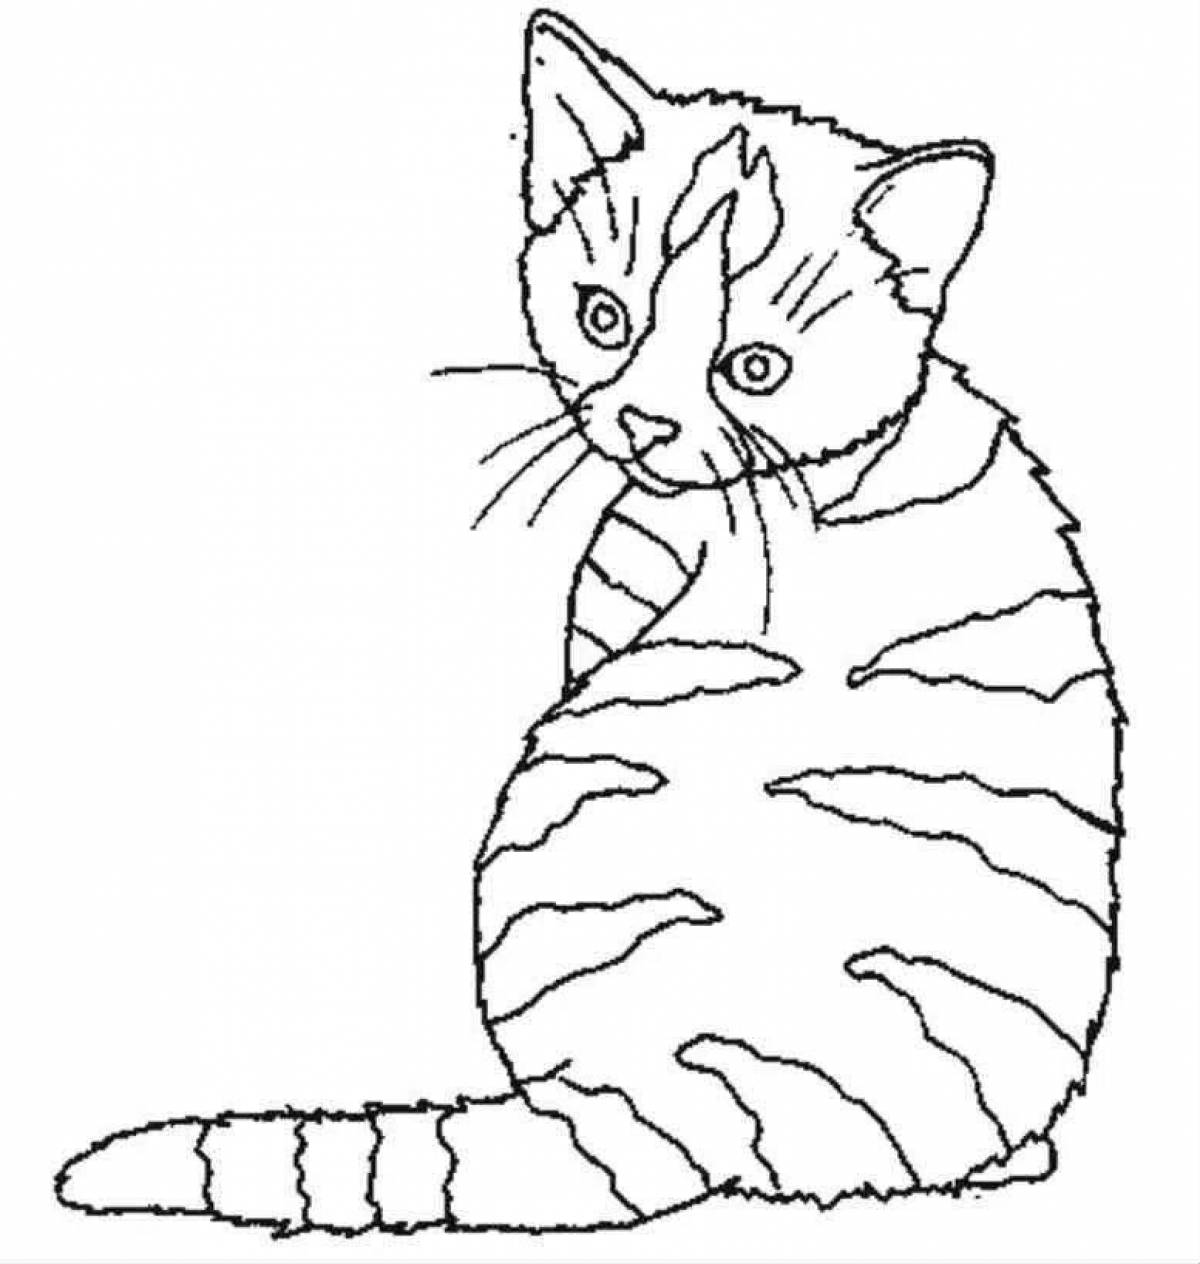 Полосатый кот раскраска для детей